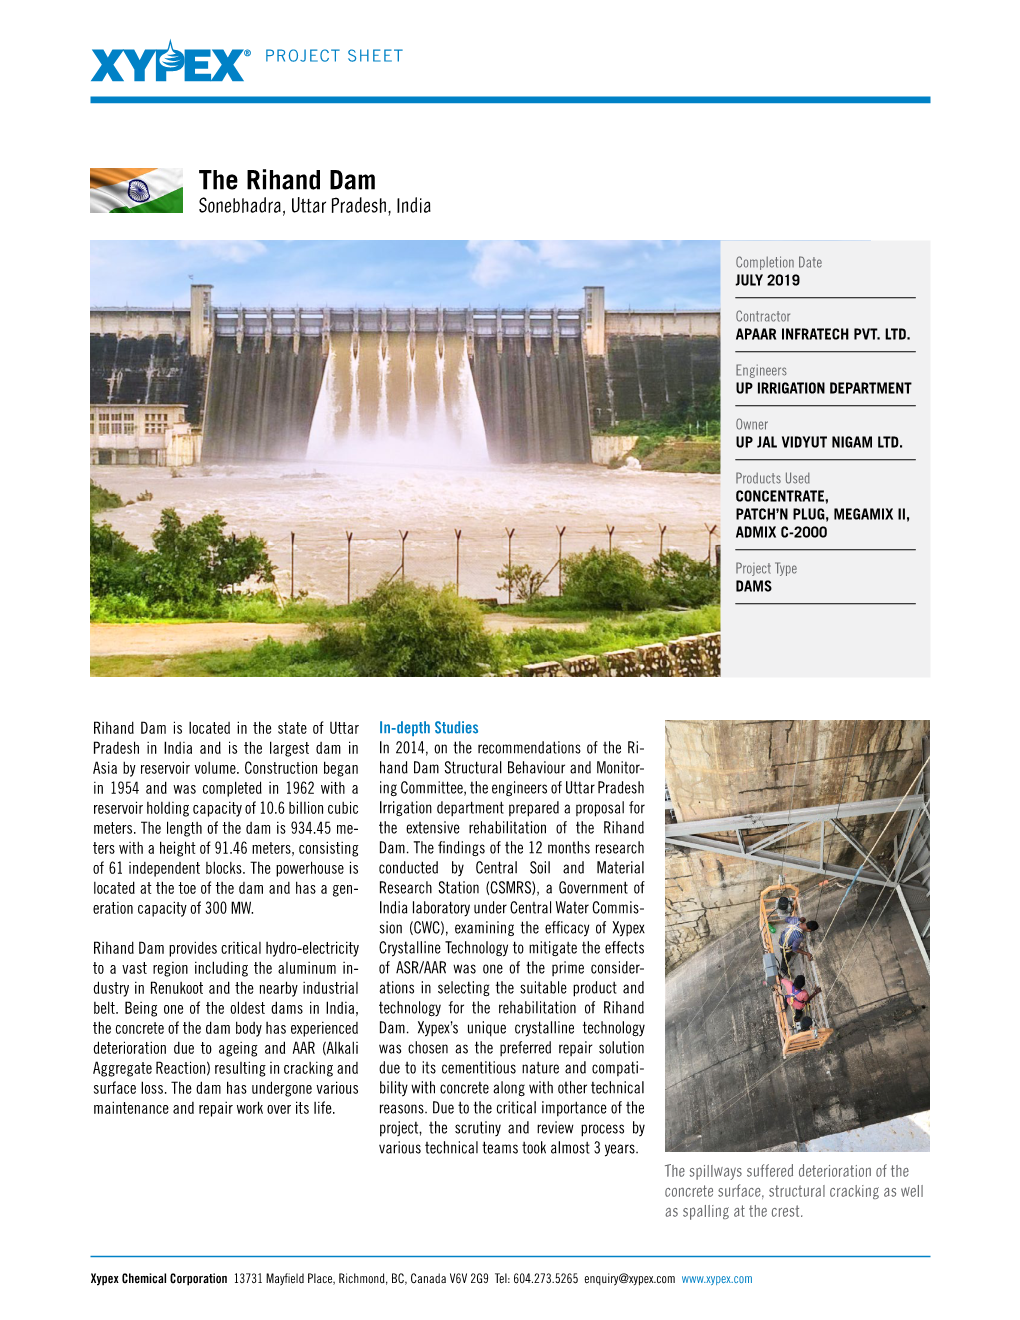 The Rihand Dam Sonebhadra, Uttar Pradesh, India